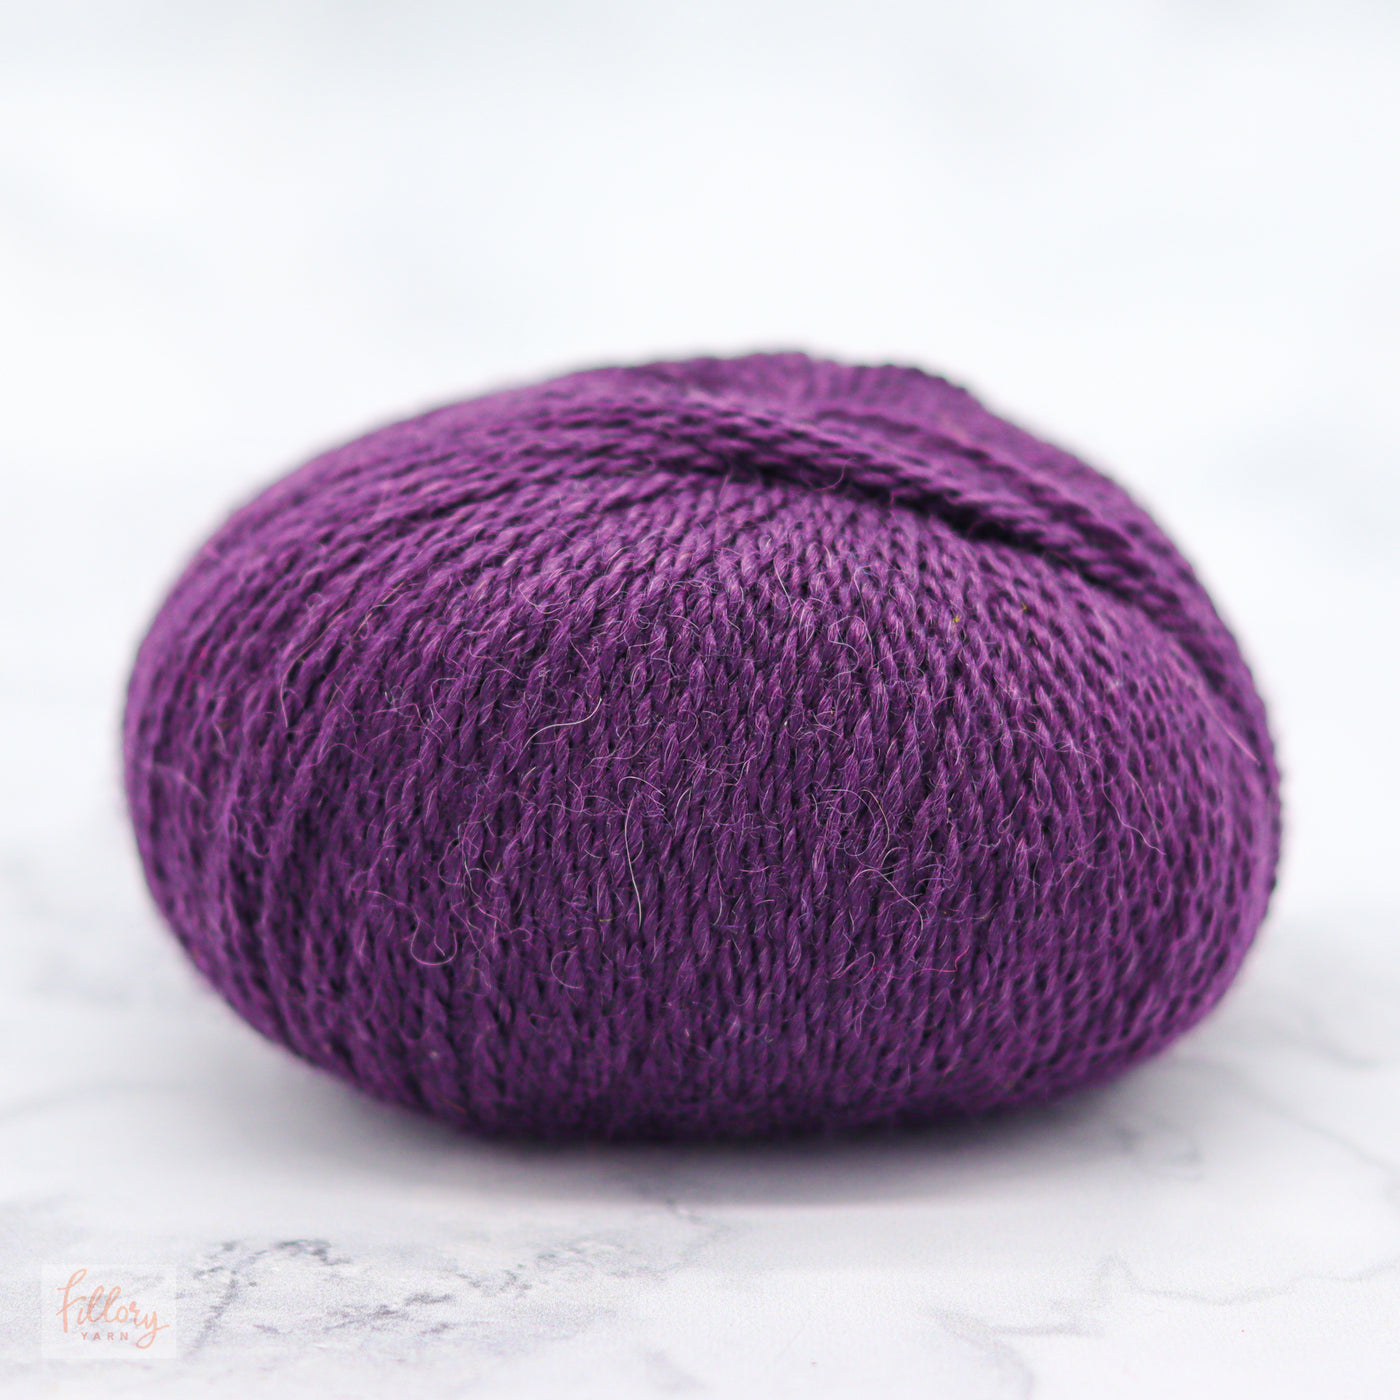 Pascuali Balayage Fingering Alpaca Wool Knitting Yarn